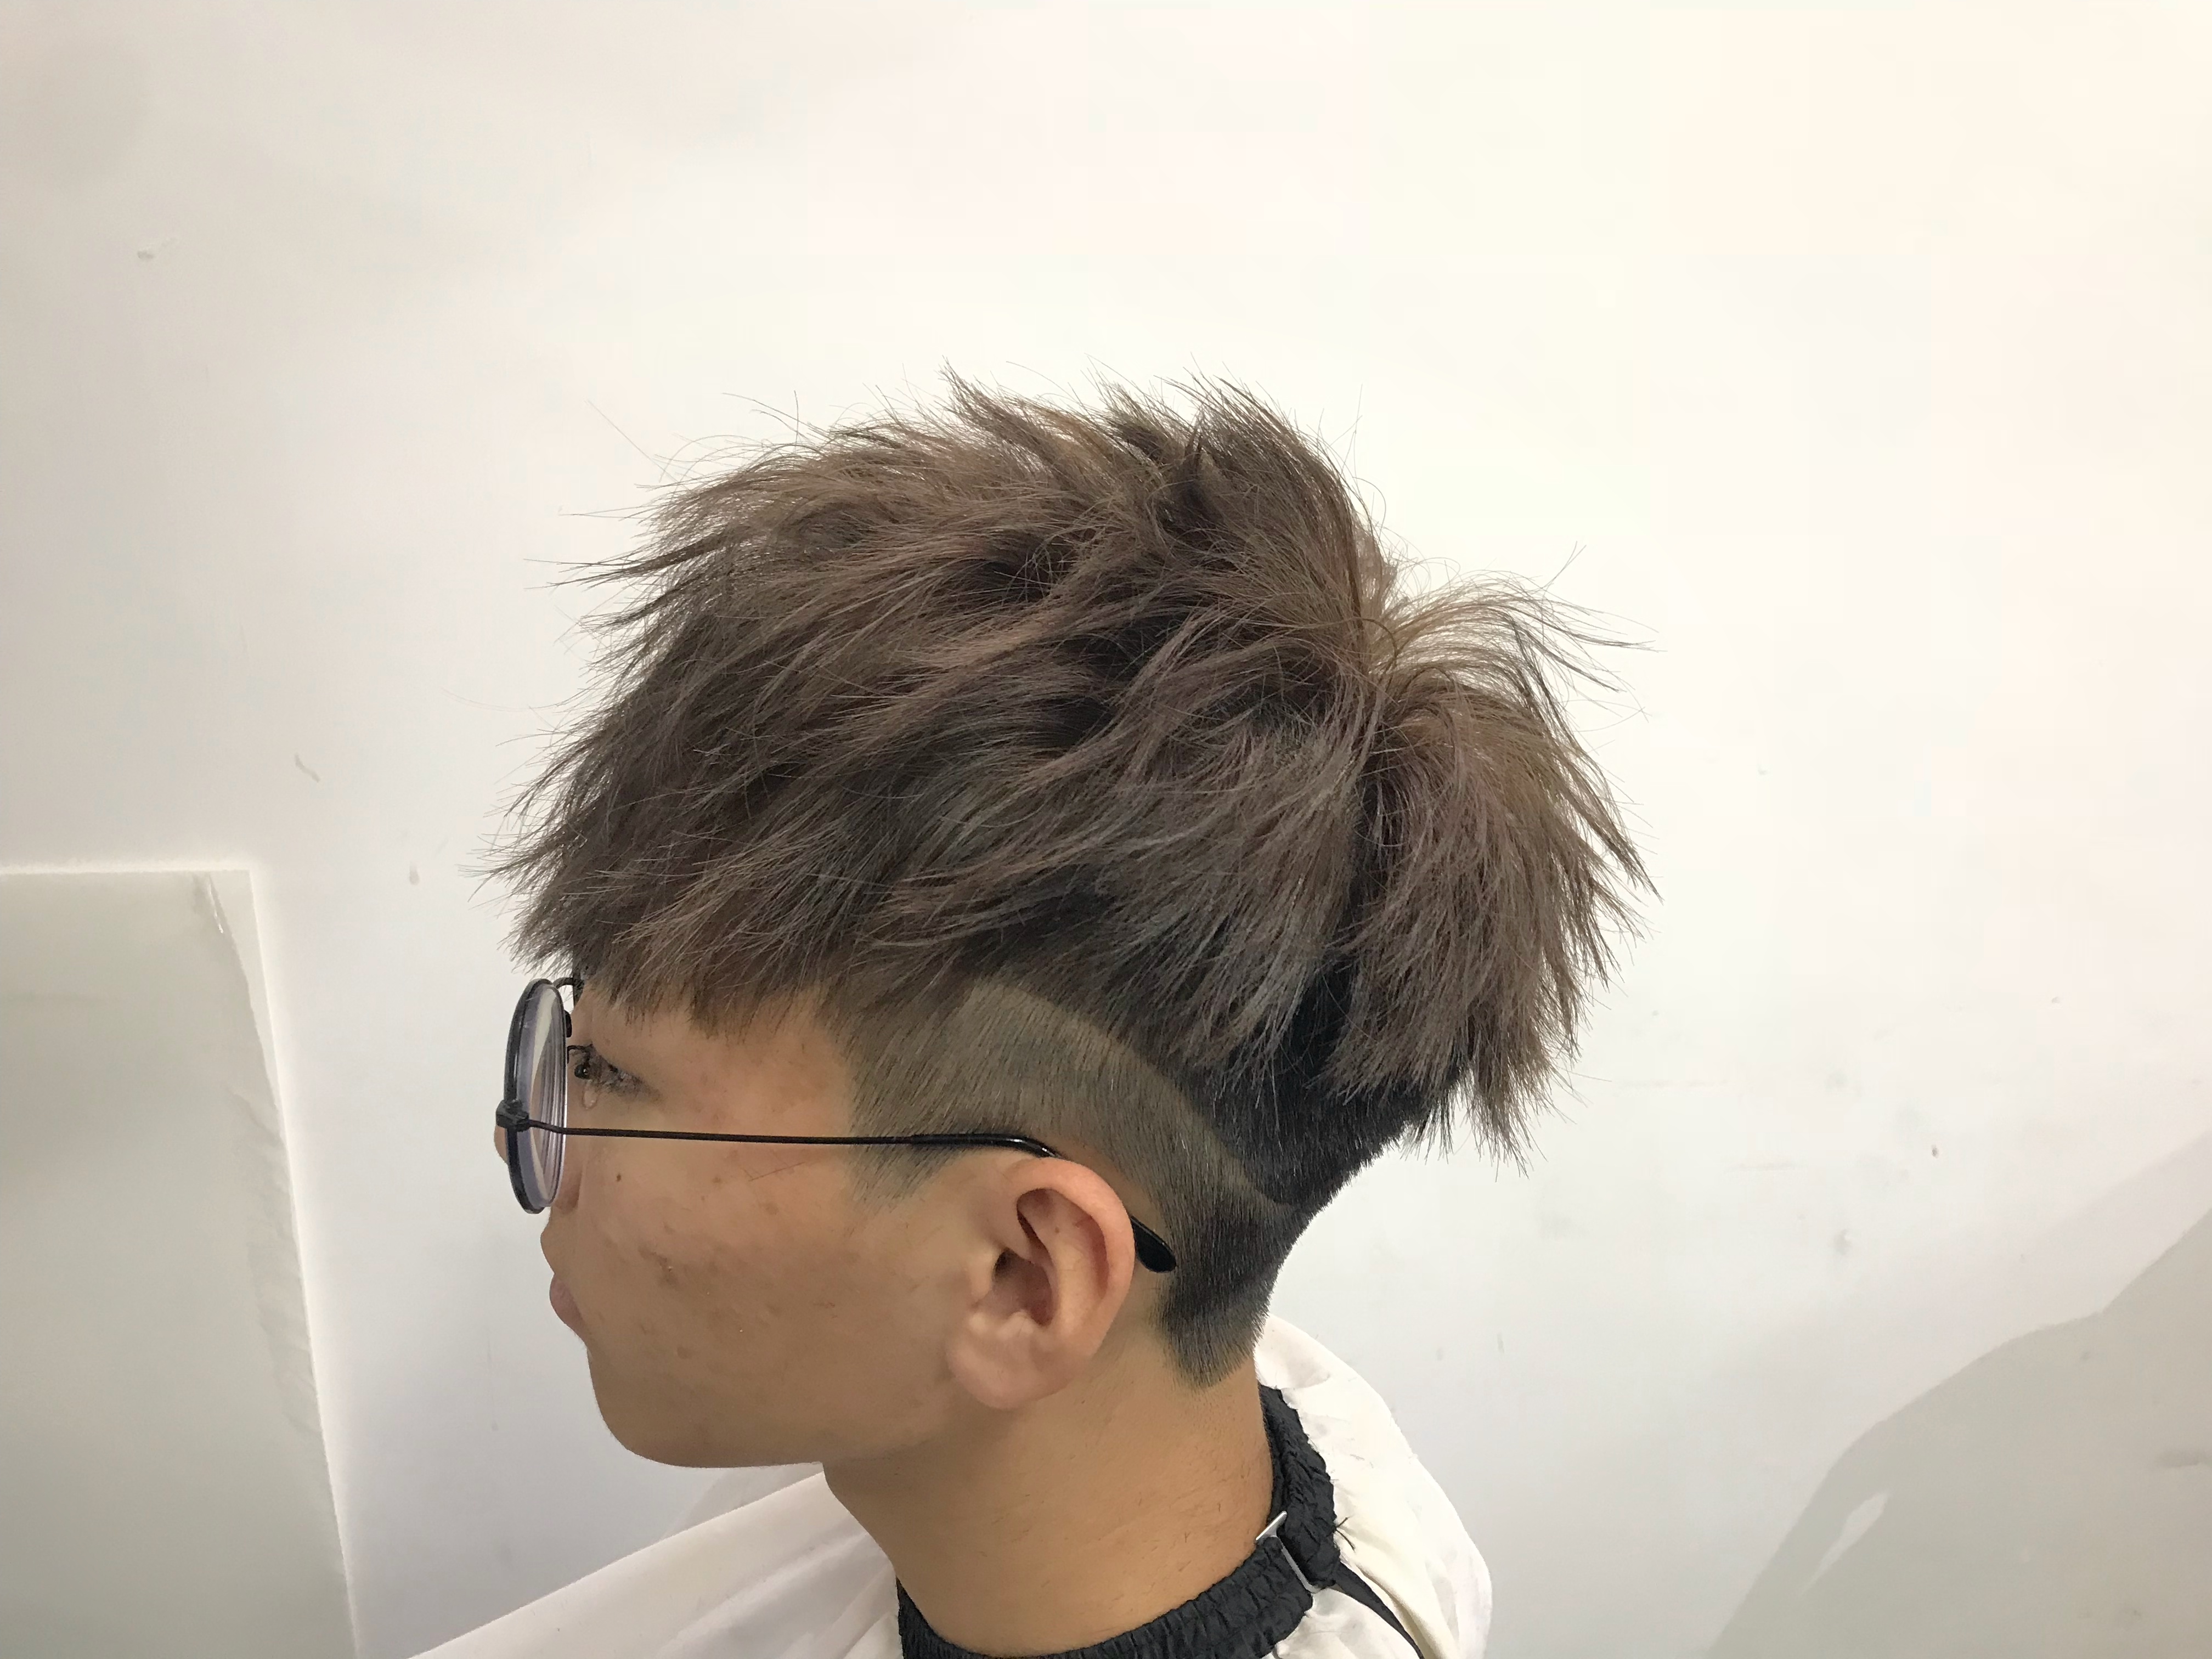 髮型作品參考:日本風男士染剪造型